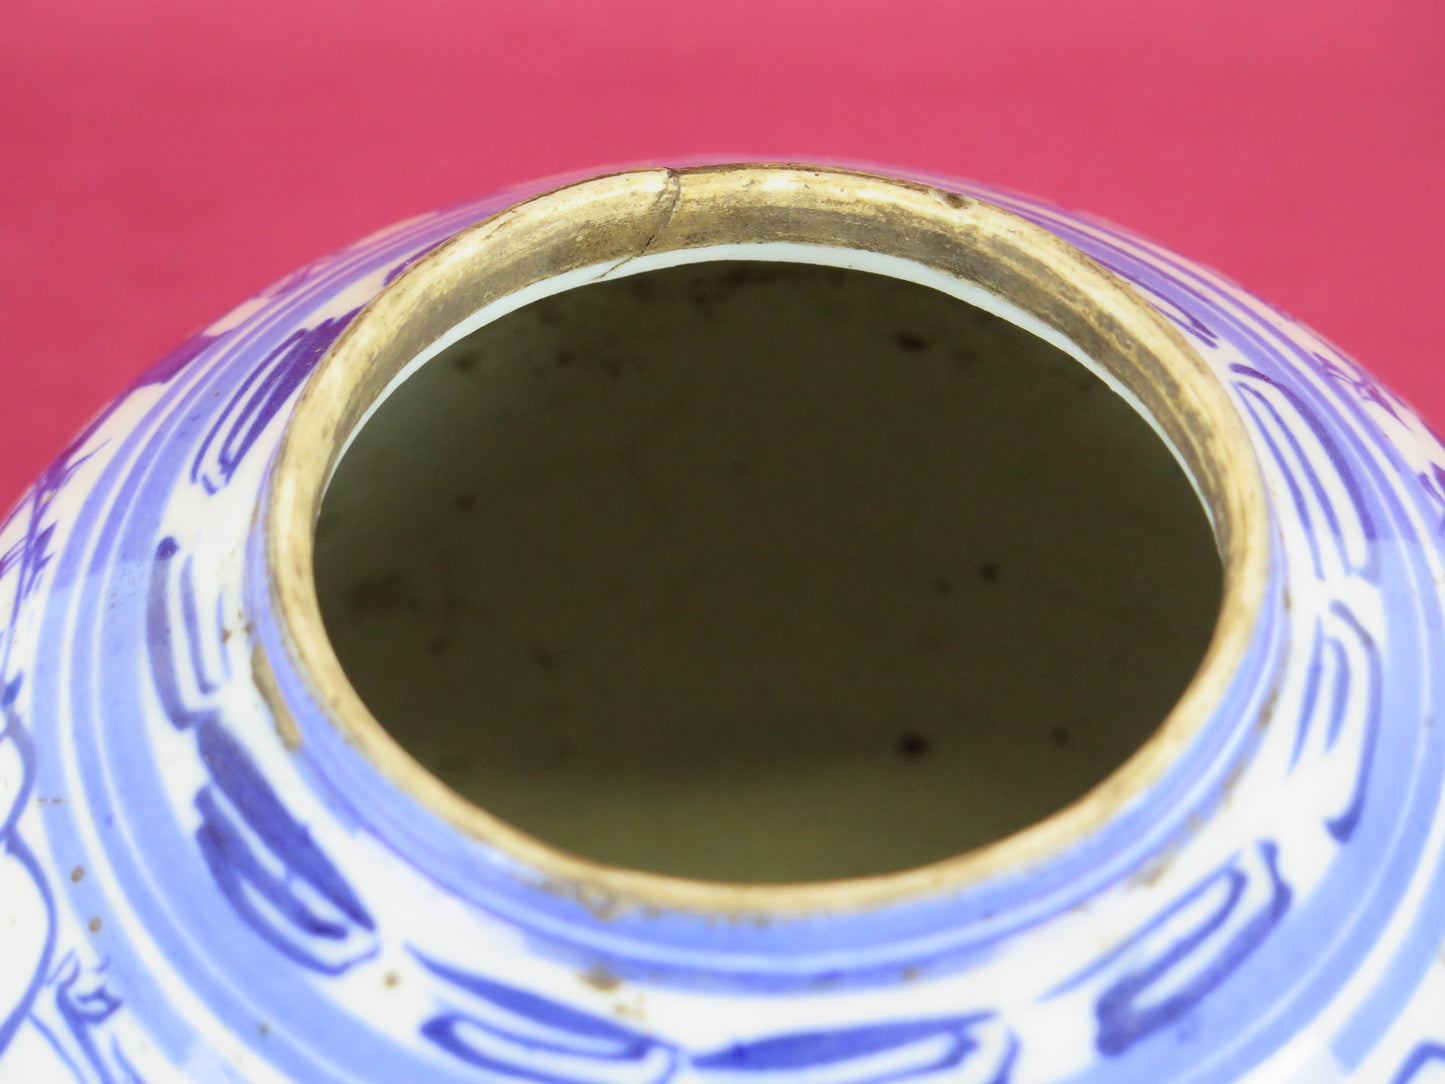 Vaso antico Cina ceramica bianco blu dipinto mano da collezione cinese Asia CM2